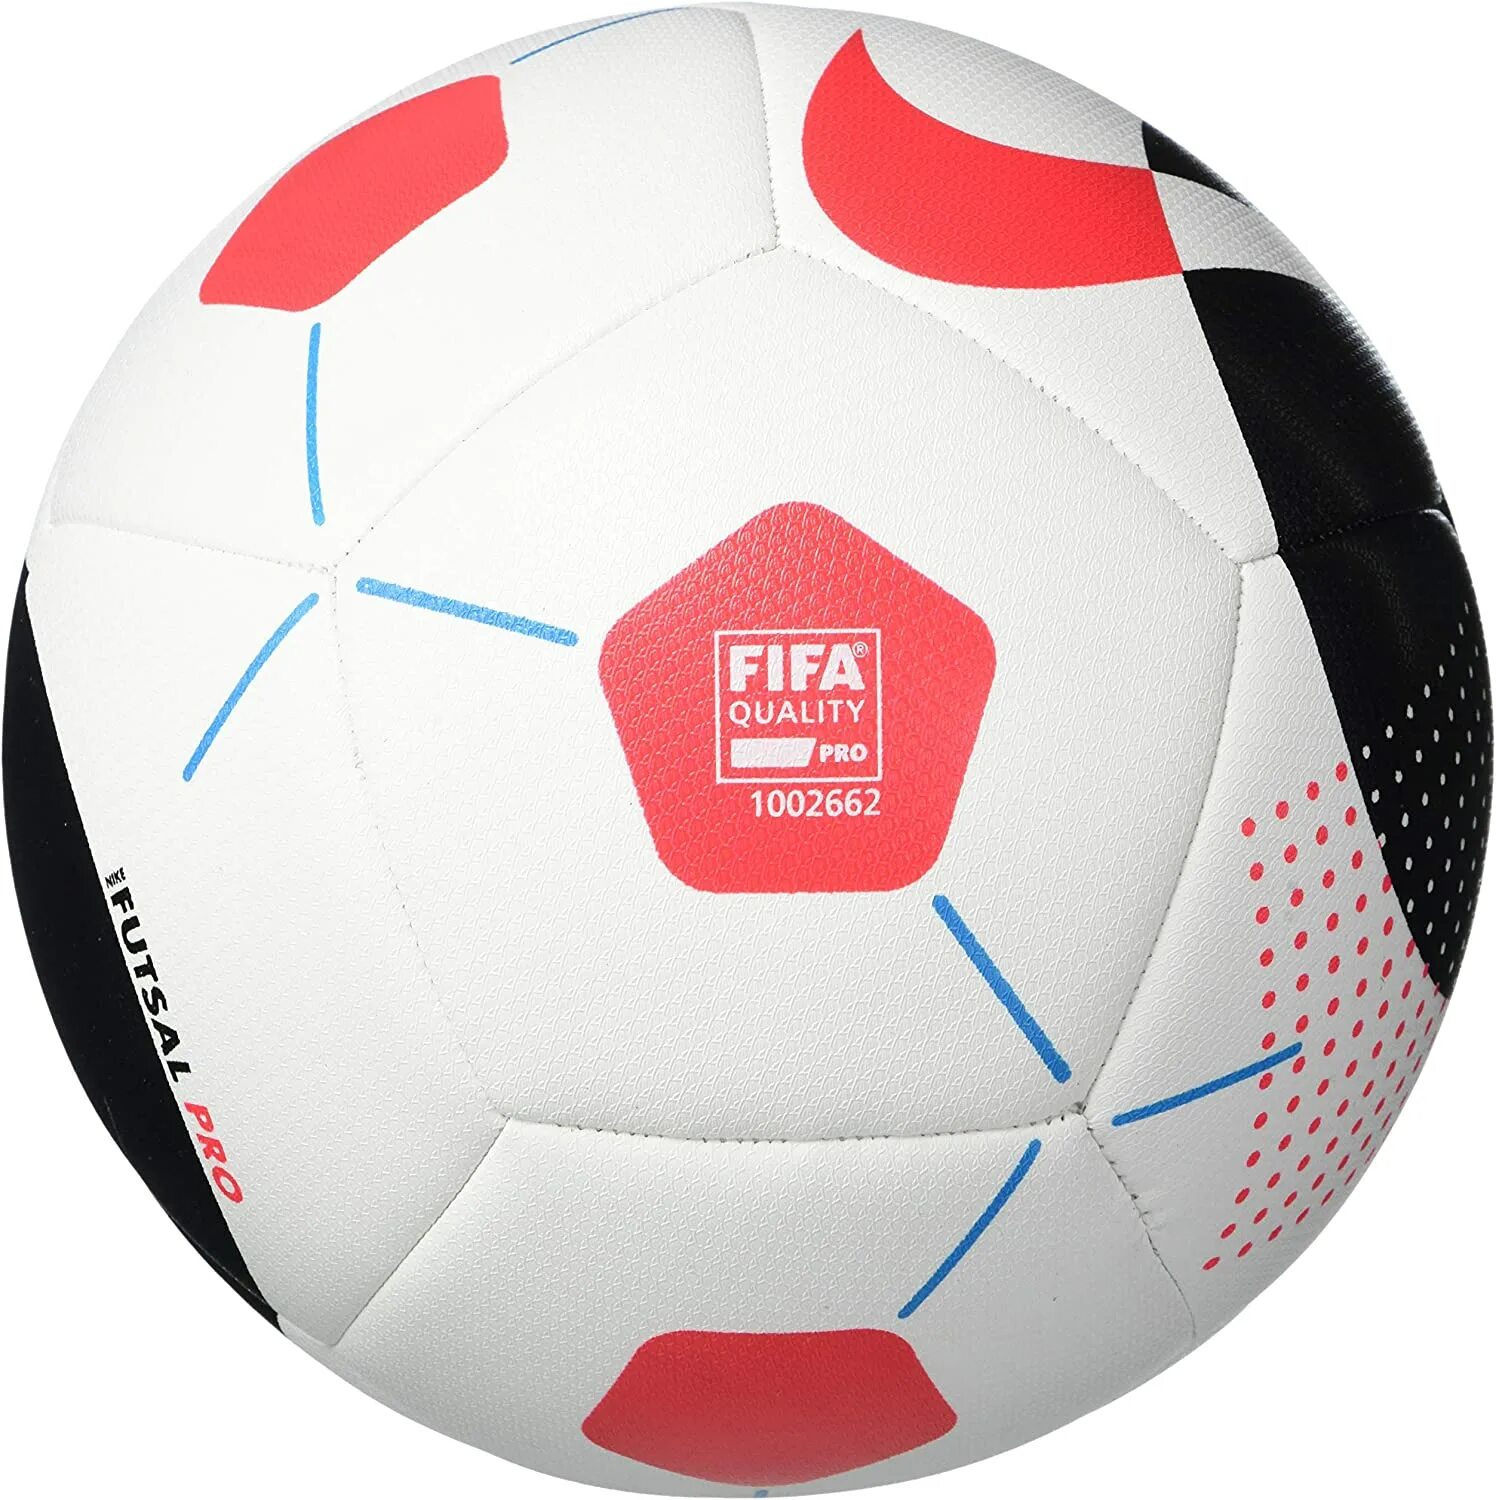 Футбольный мяч fifa quality pro. Мяч Nike FIFA quality Pro. Мяч футзальный найк 1002662. Футбольный мяч Nike Futsal Pro. Мяч Nike FIFA quality 2006-2007.